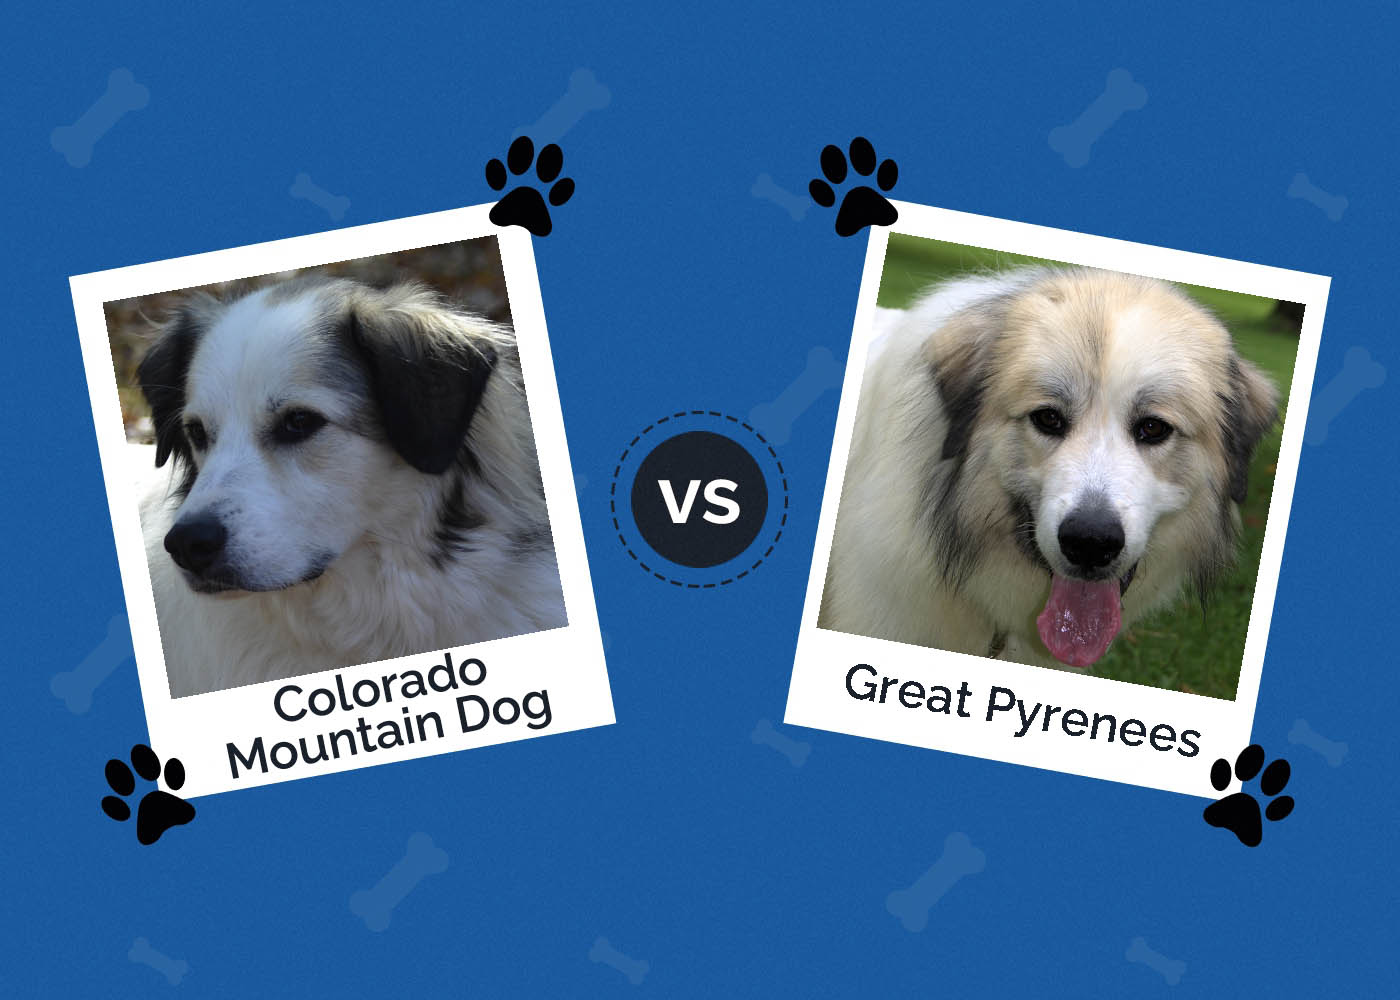 Colorado Mountain Dog vs Great Pyrenees